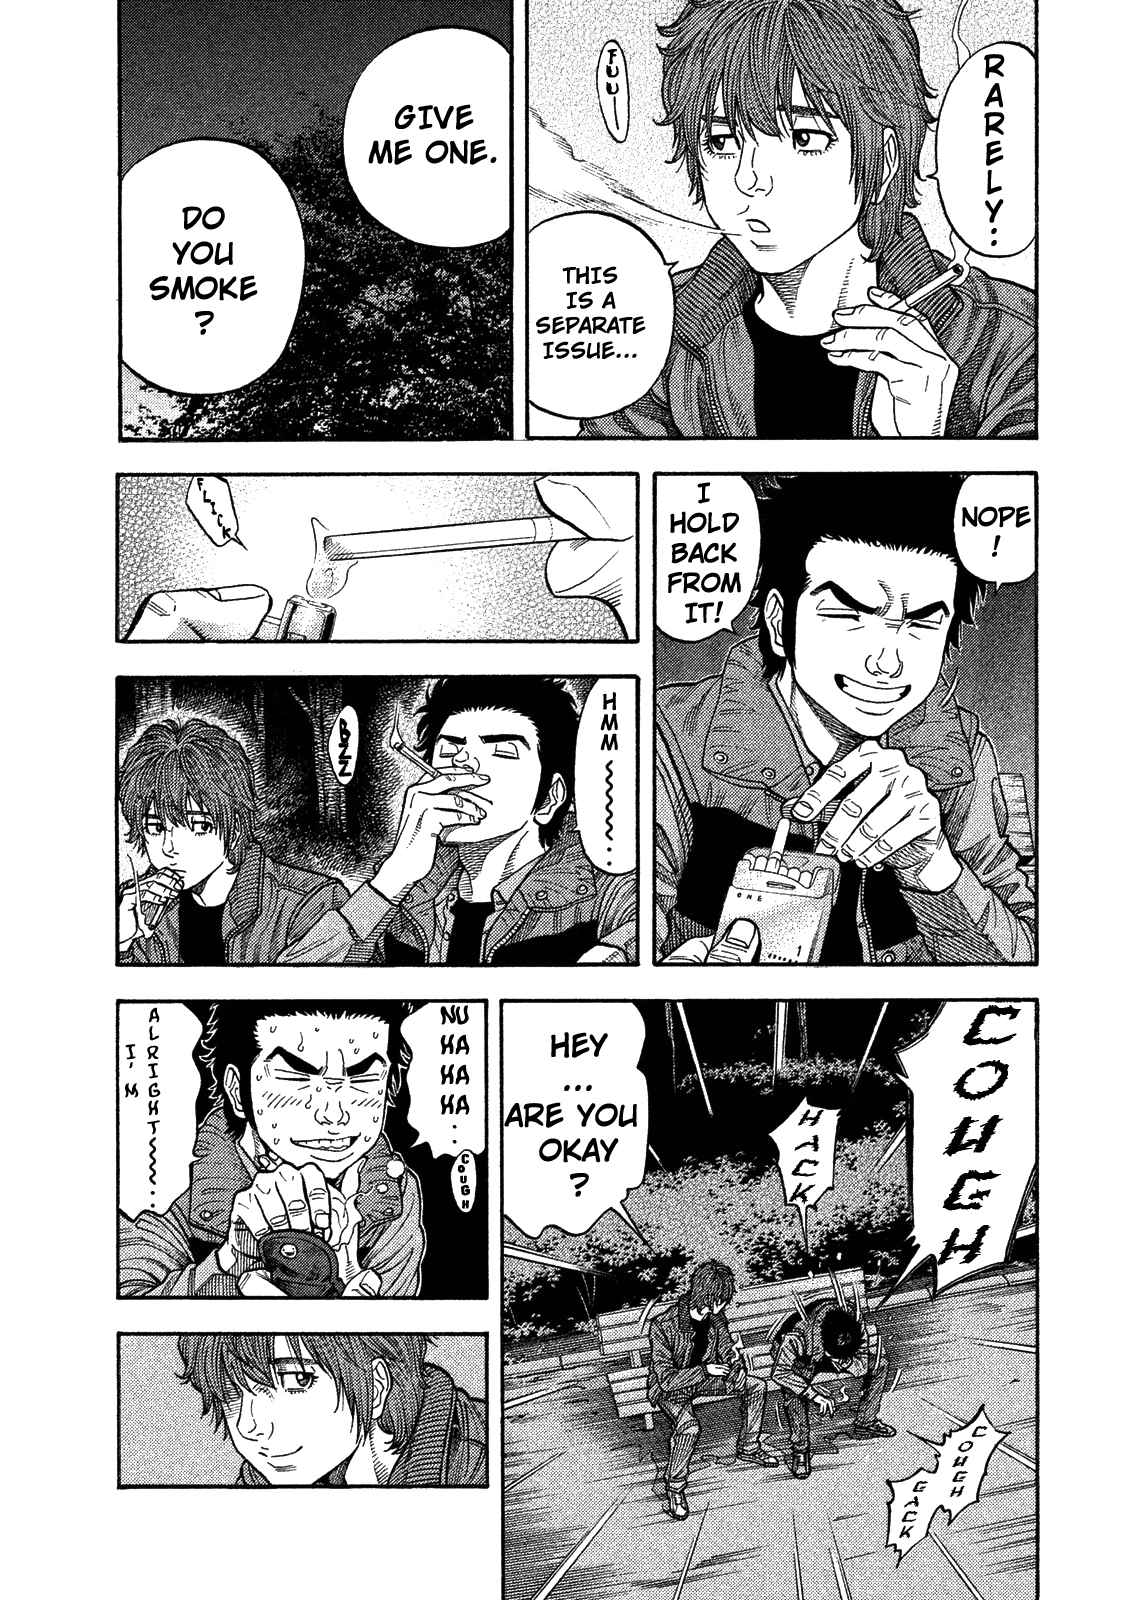 Kudan no Gotoshi Vol. 1 Ch. 2 Shiraishi Tatsumi < Part 1 >